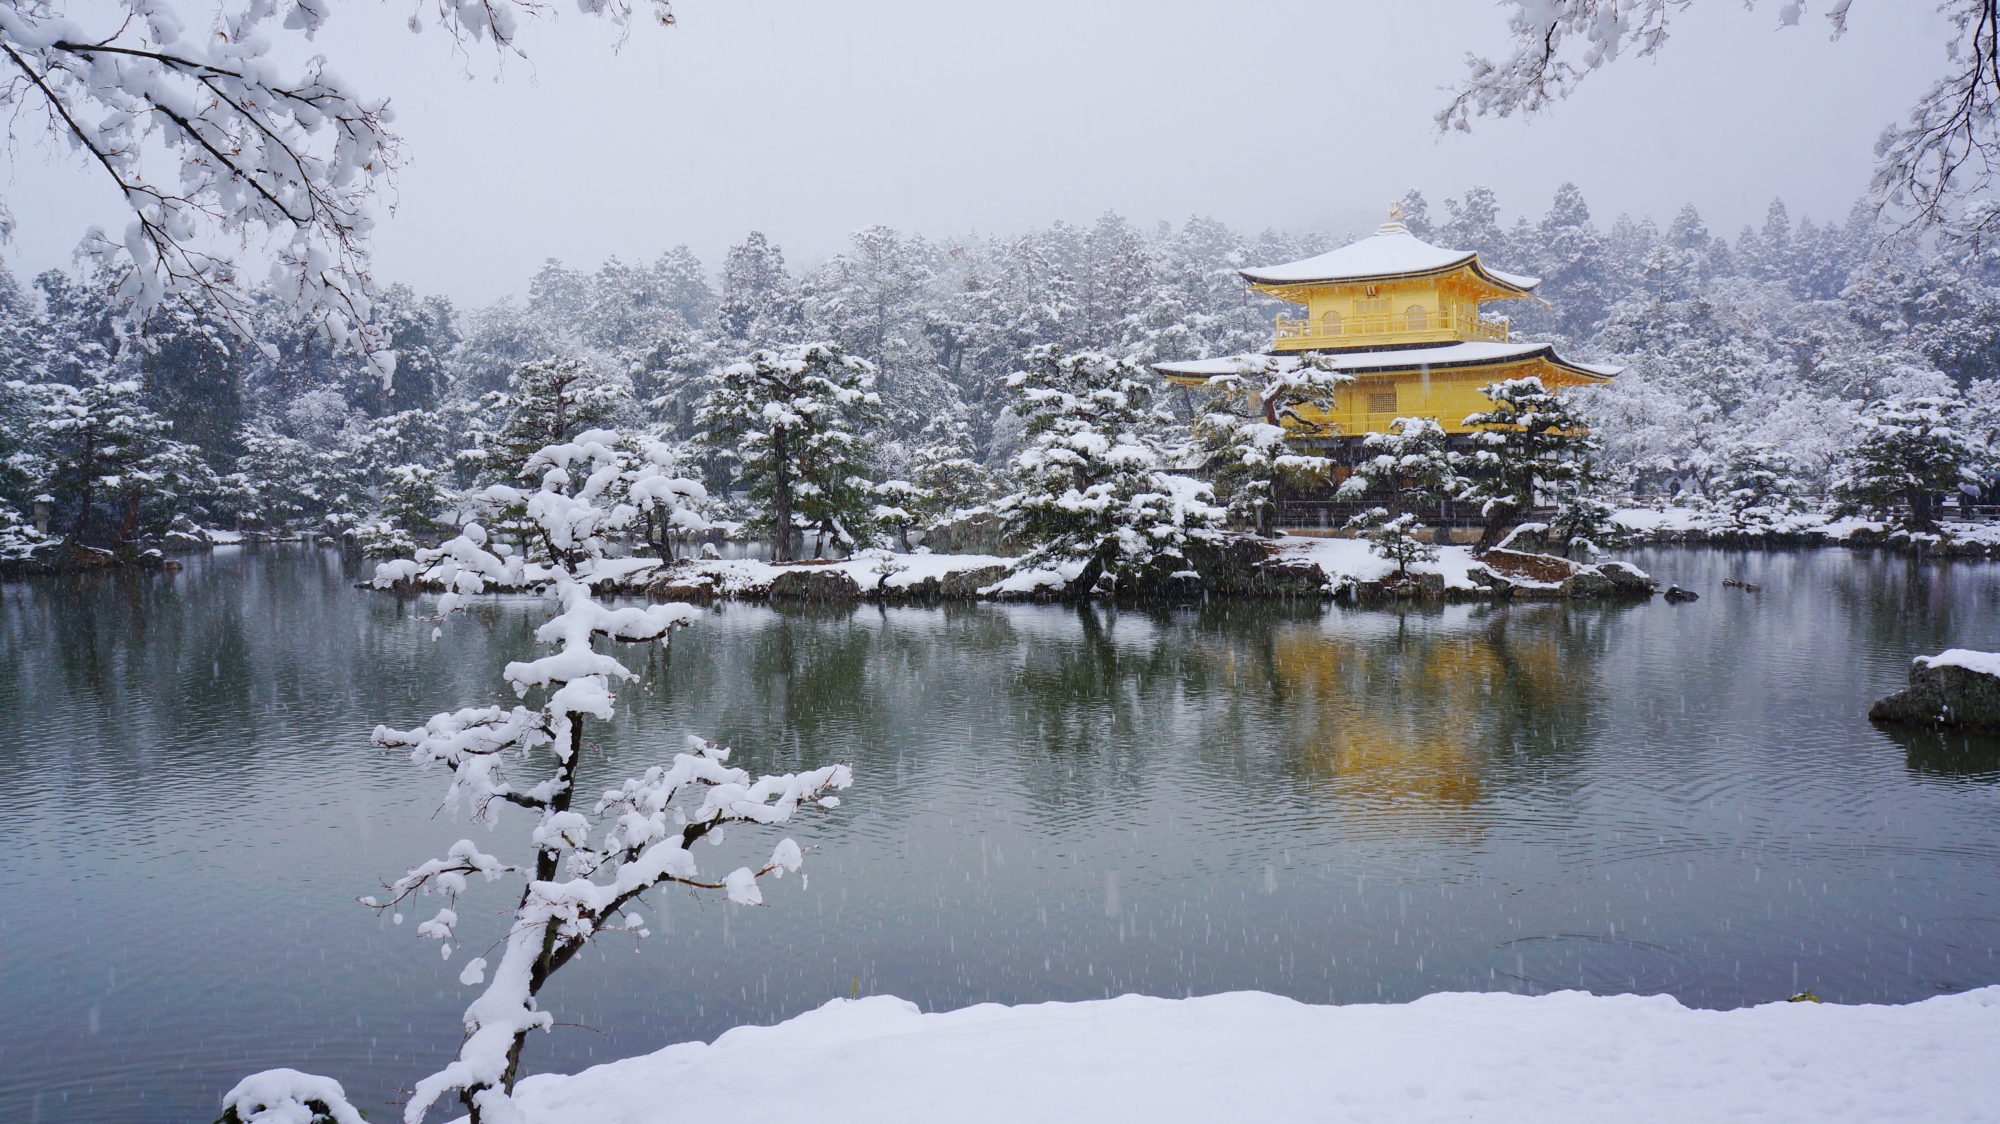 雪につつまれた金閣寺の舎利殿